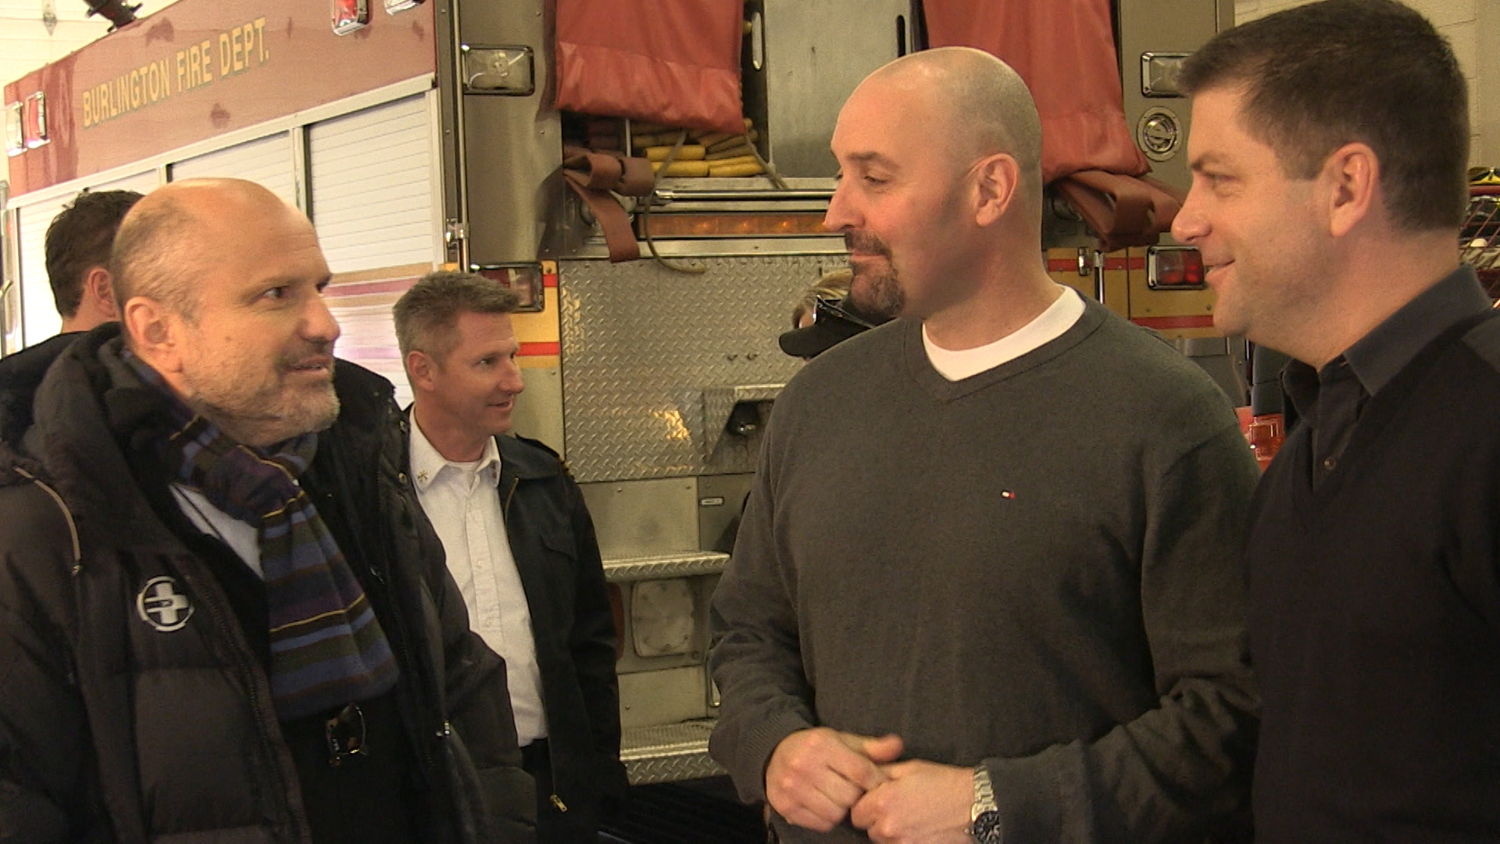 Enrico Colantoni meets with the Burlington Fire Service.